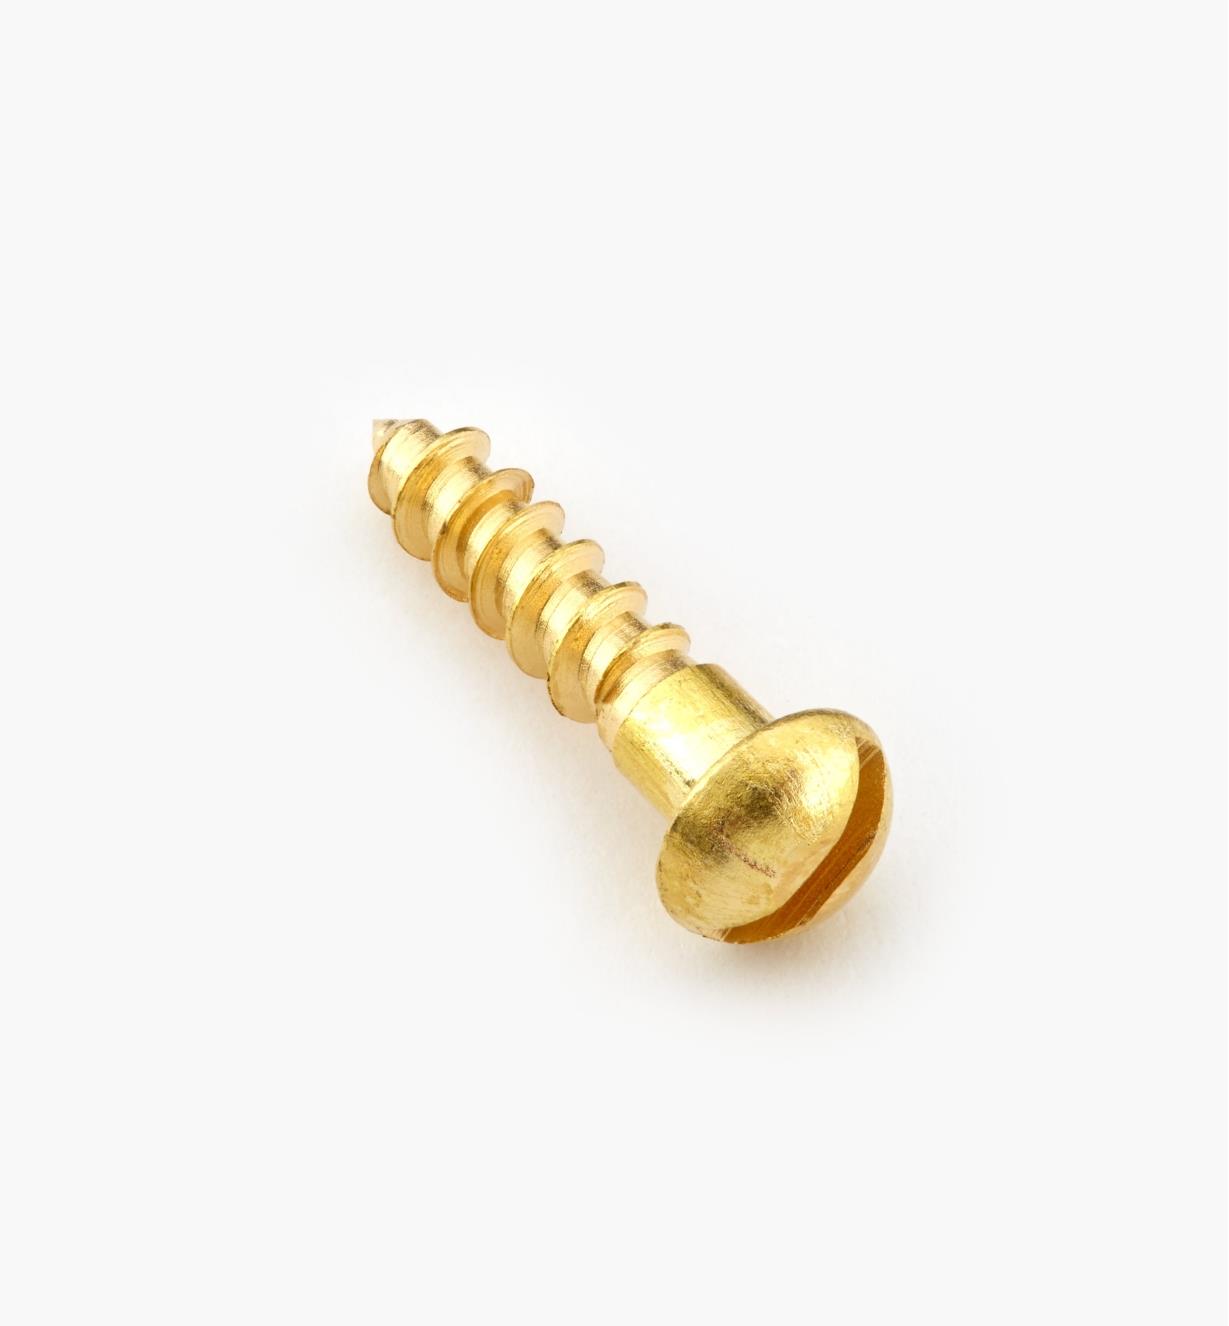 91Y0403 - #4, 1/2" Round Brass Screws, pkg. of 100